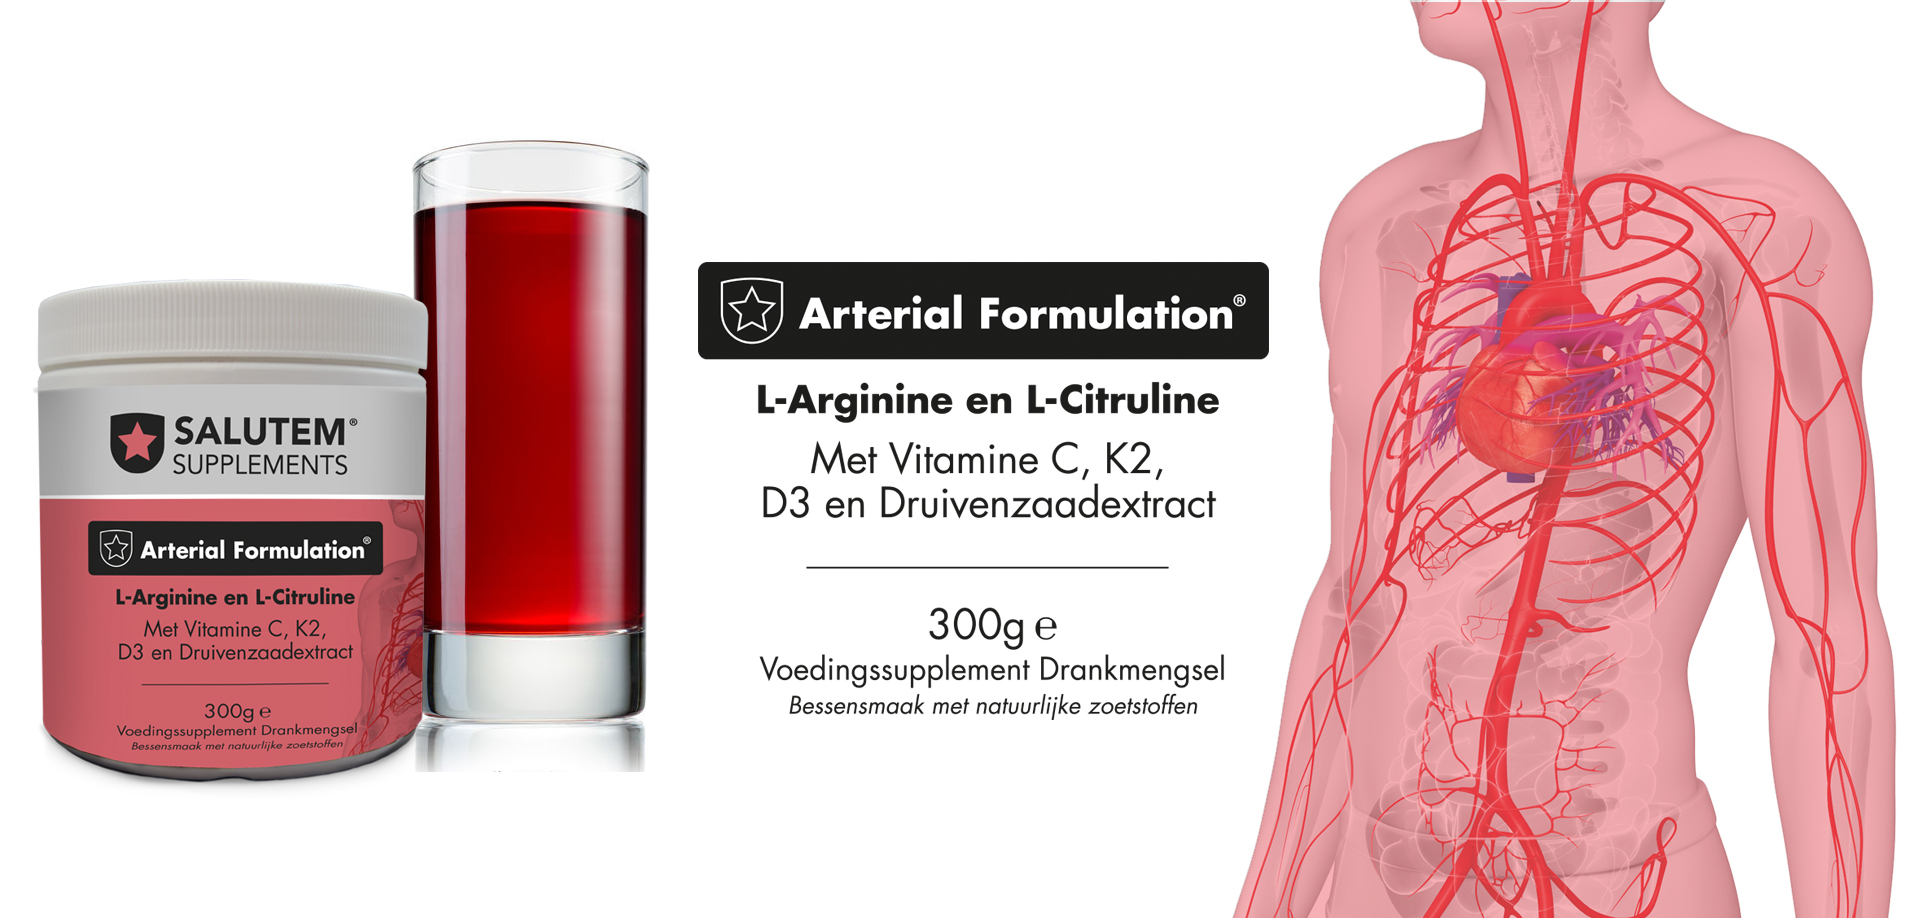 Arterial Formulation